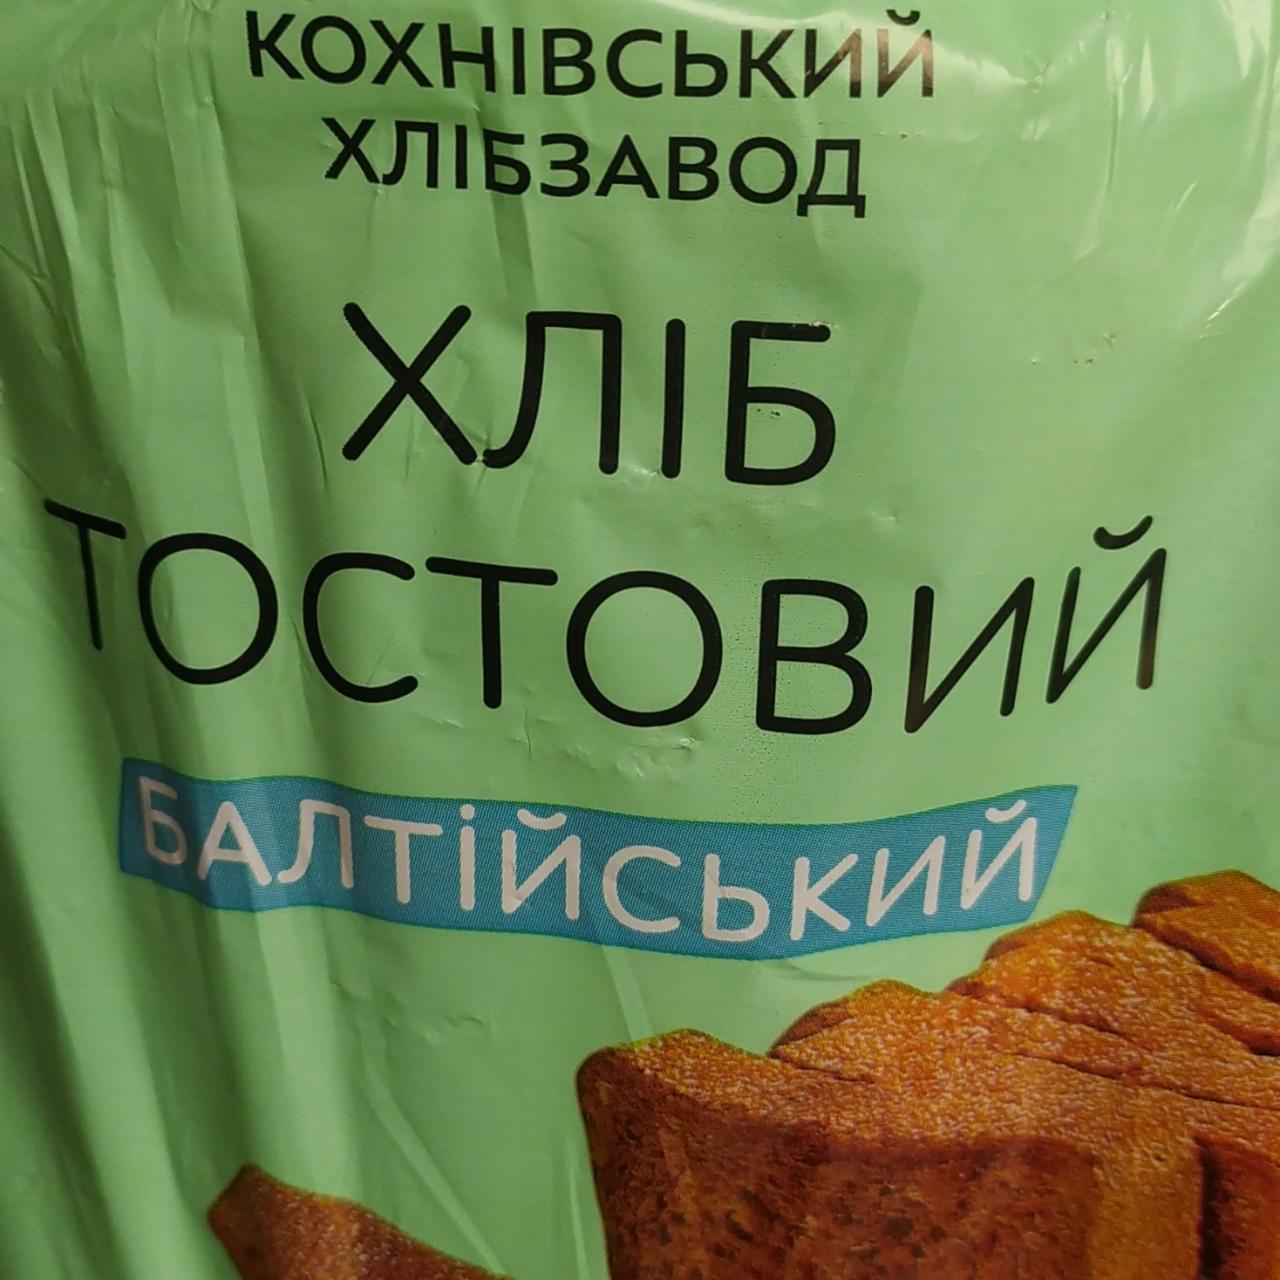 Фото - Хліб тостовий Балтійський Кохнівський хлібзавод